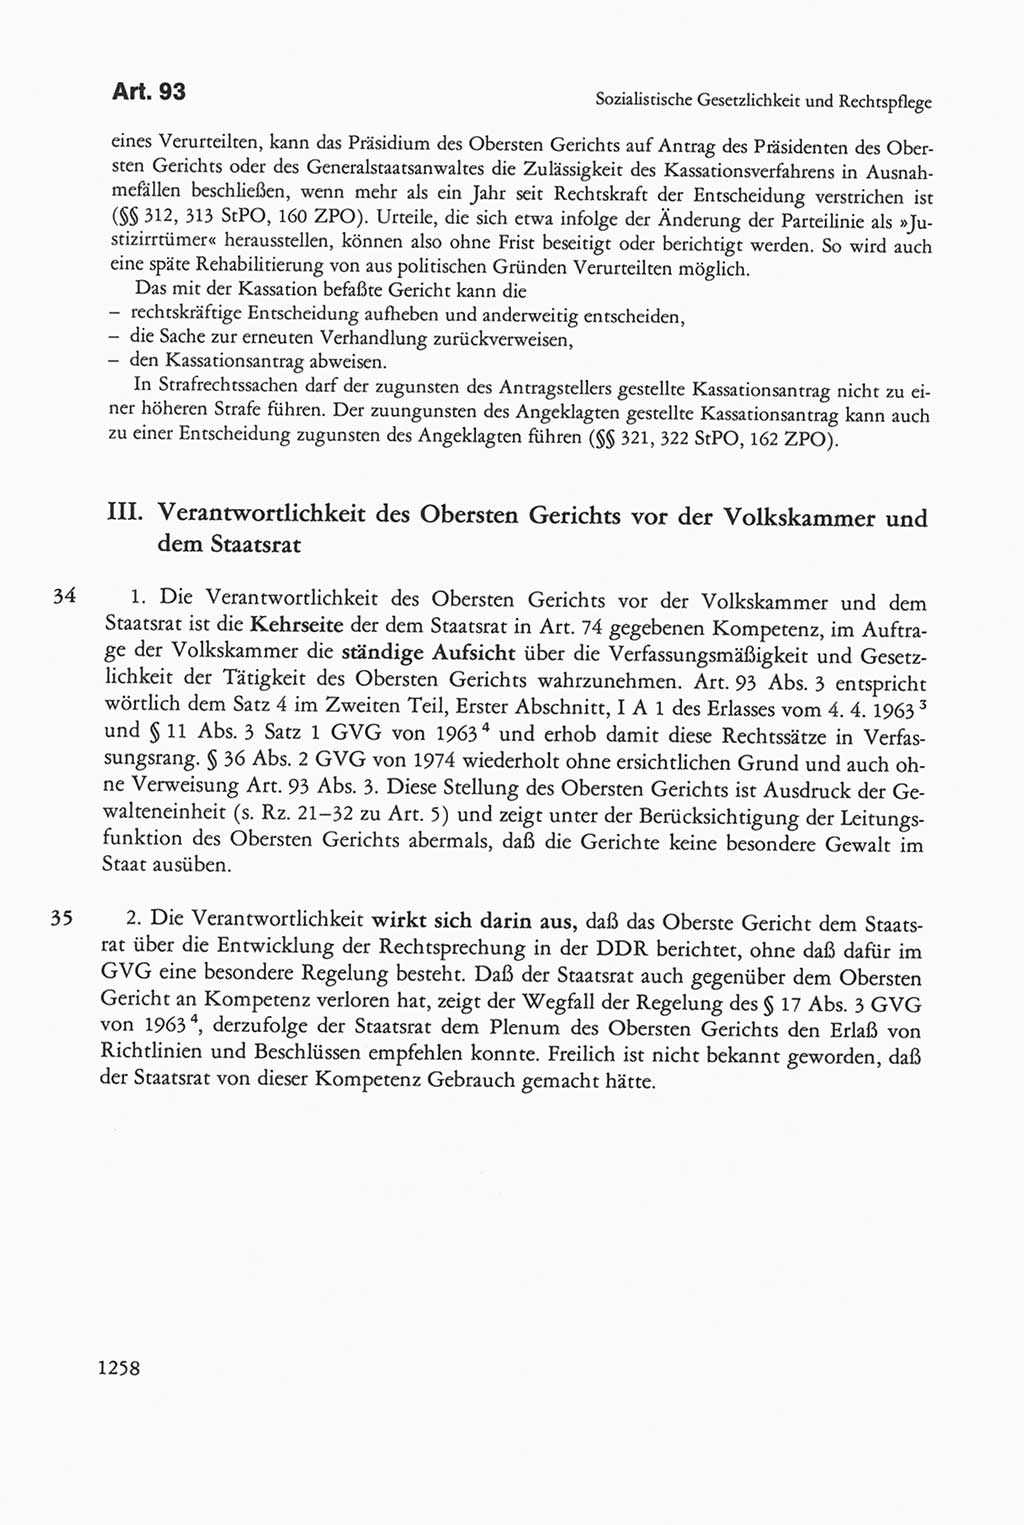 Die sozialistische Verfassung der Deutschen Demokratischen Republik (DDR), Kommentar mit einem Nachtrag 1997, Seite 1258 (Soz. Verf. DDR Komm. Nachtr. 1997, S. 1258)